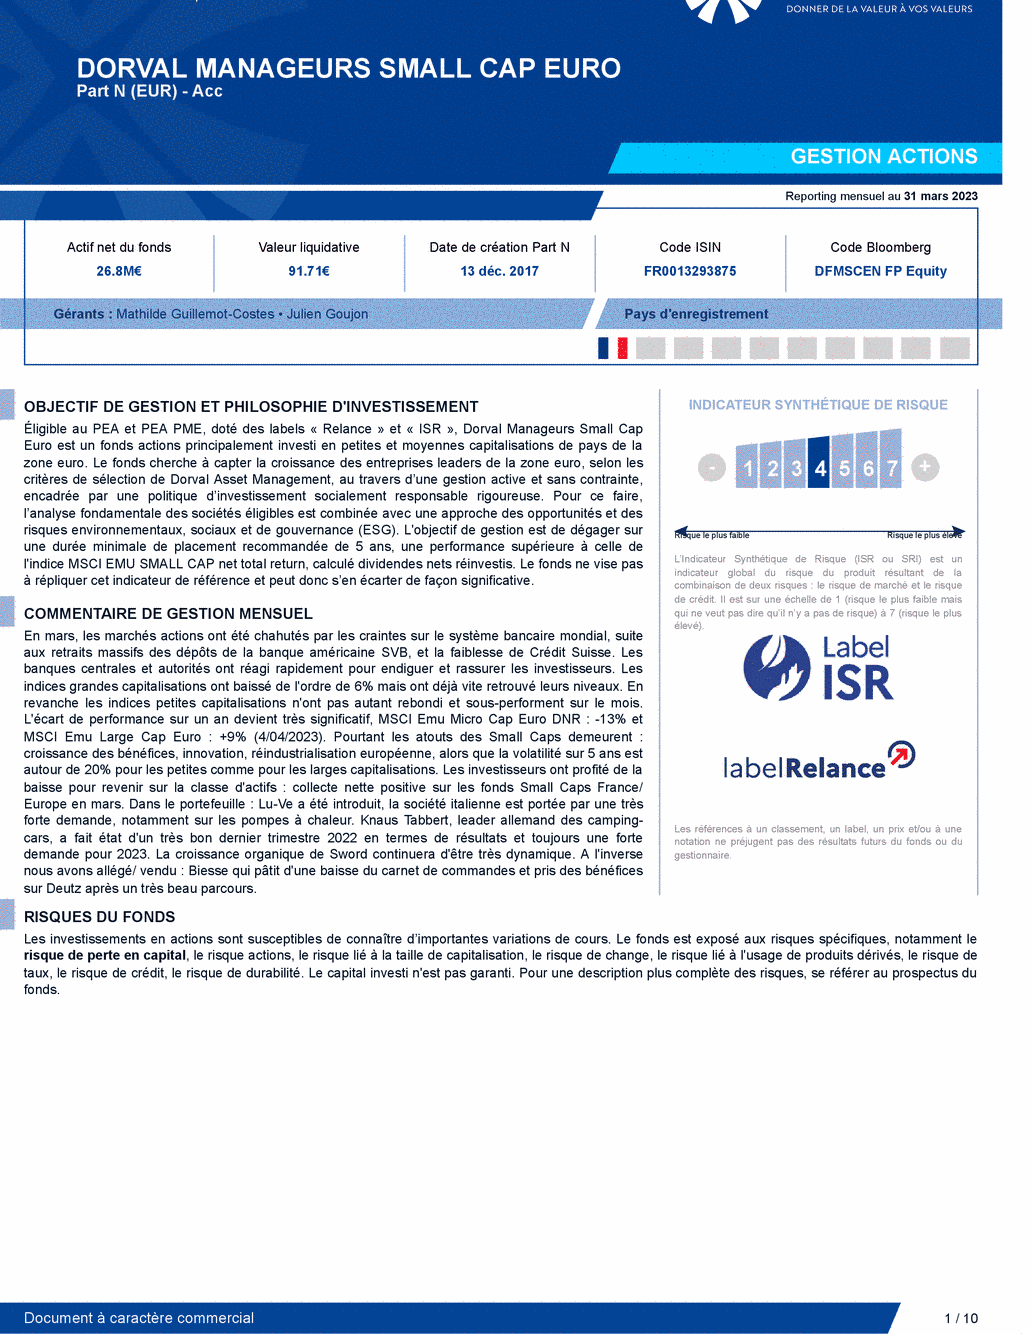 Reporting DORVAL MANAGEURS SMALL CAP EURO N - 31/03/2023 - Français